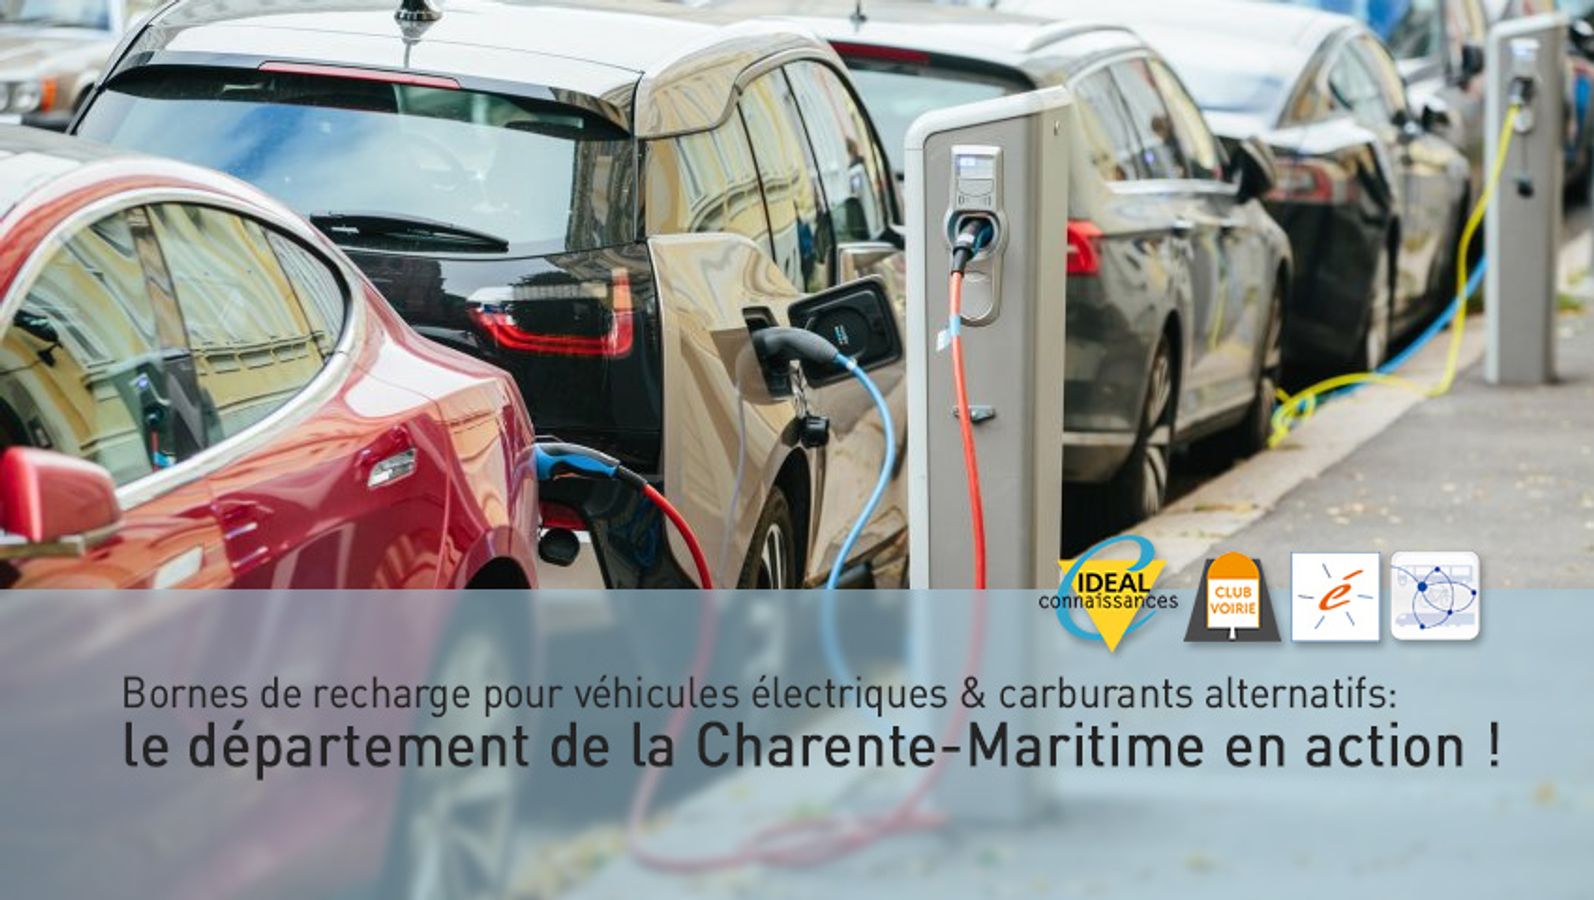 Bornes de recharge pour véhicules électriques & carburants alternatifs: le département de la Charente-Maritime en action !